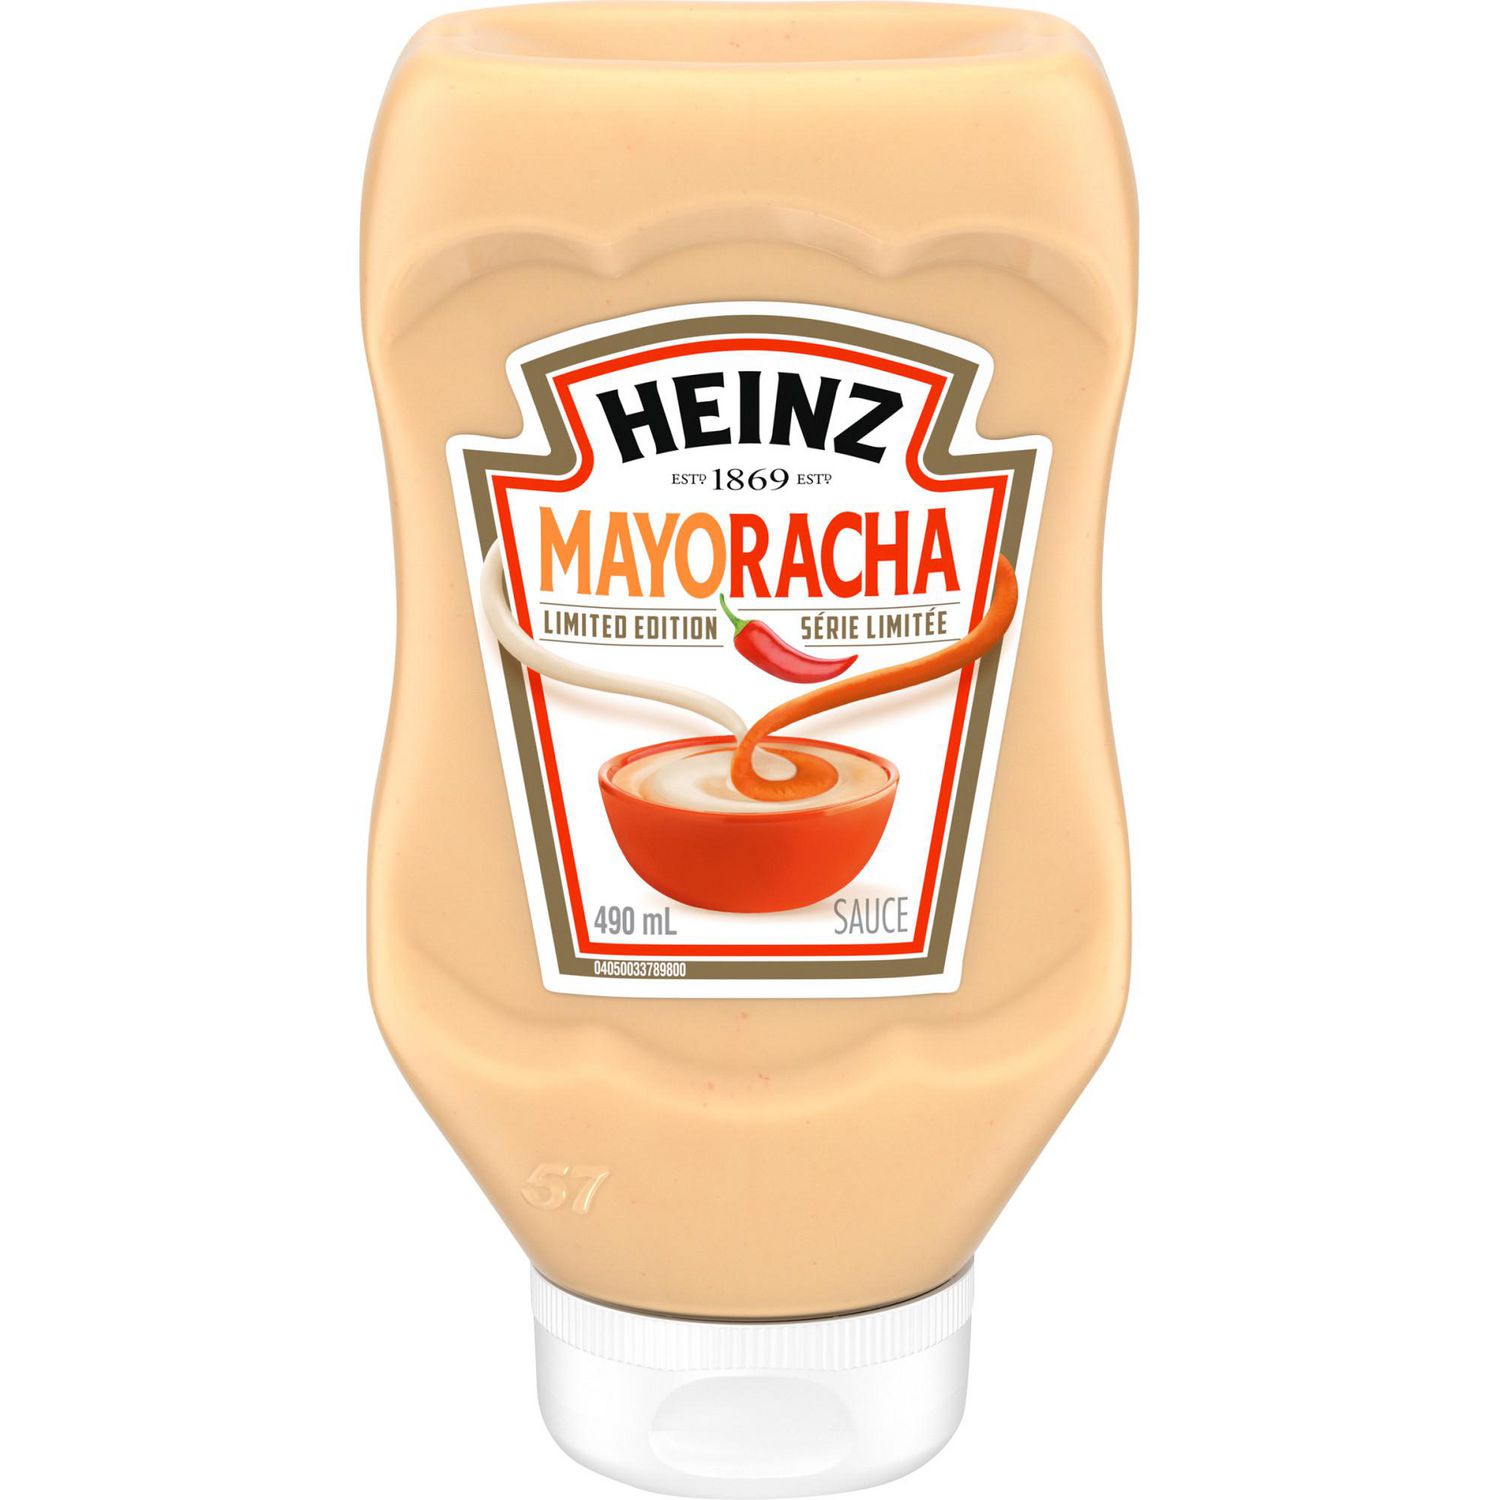 Heinz MayoRacha Saucy Sauce 470g